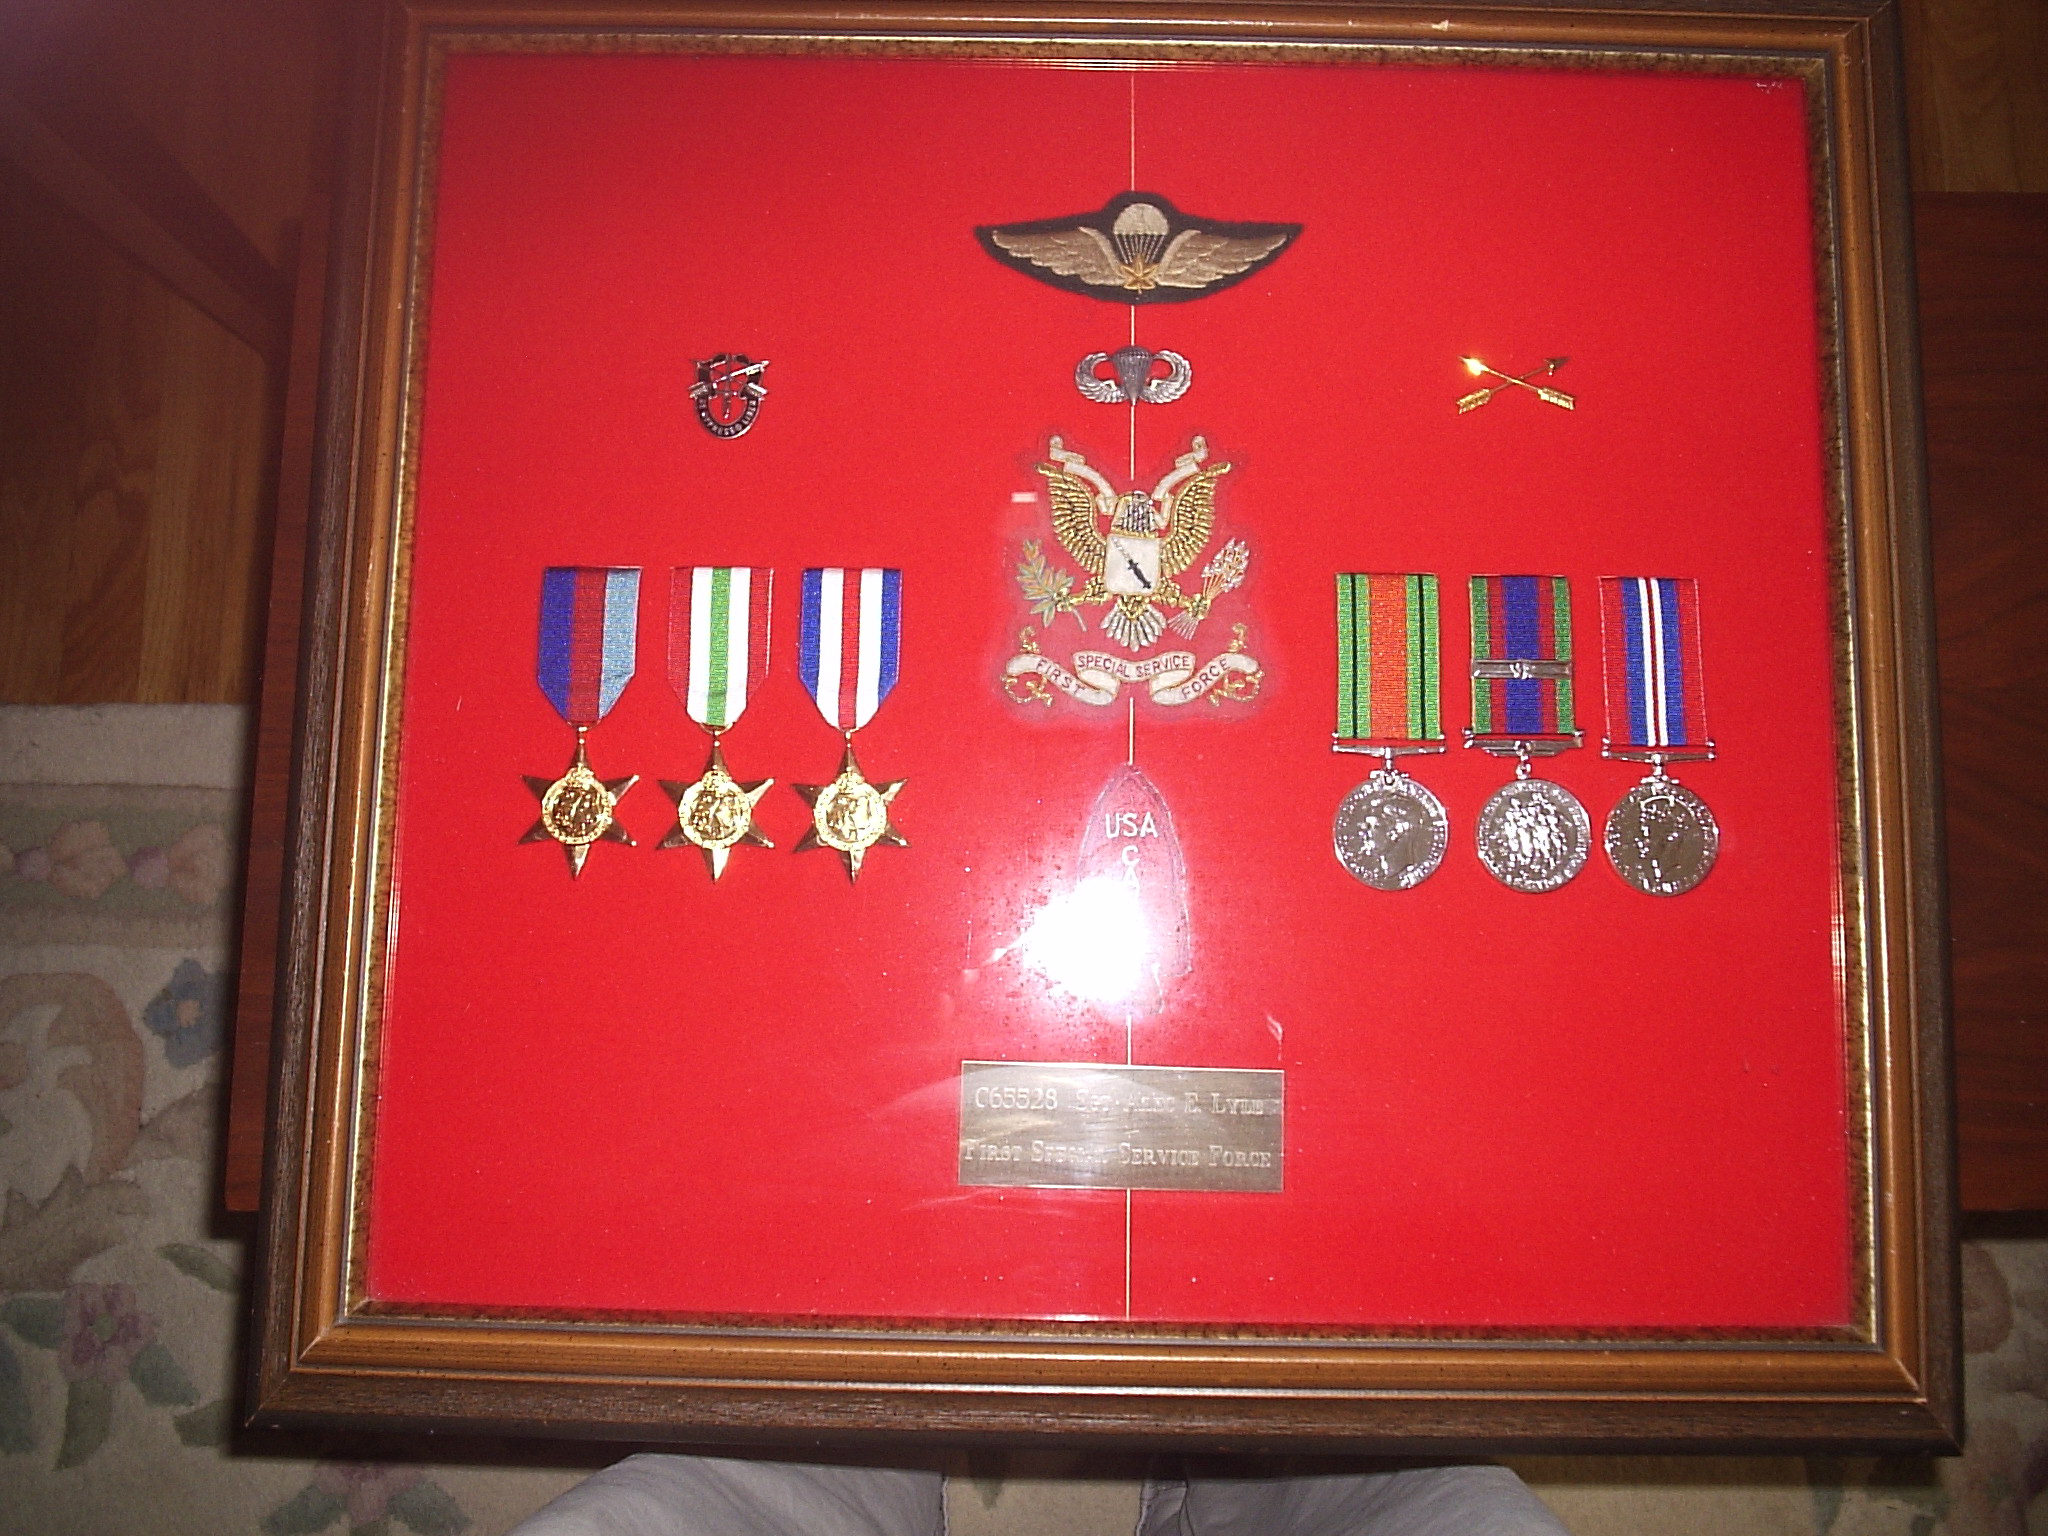 Alec Lyle's medals